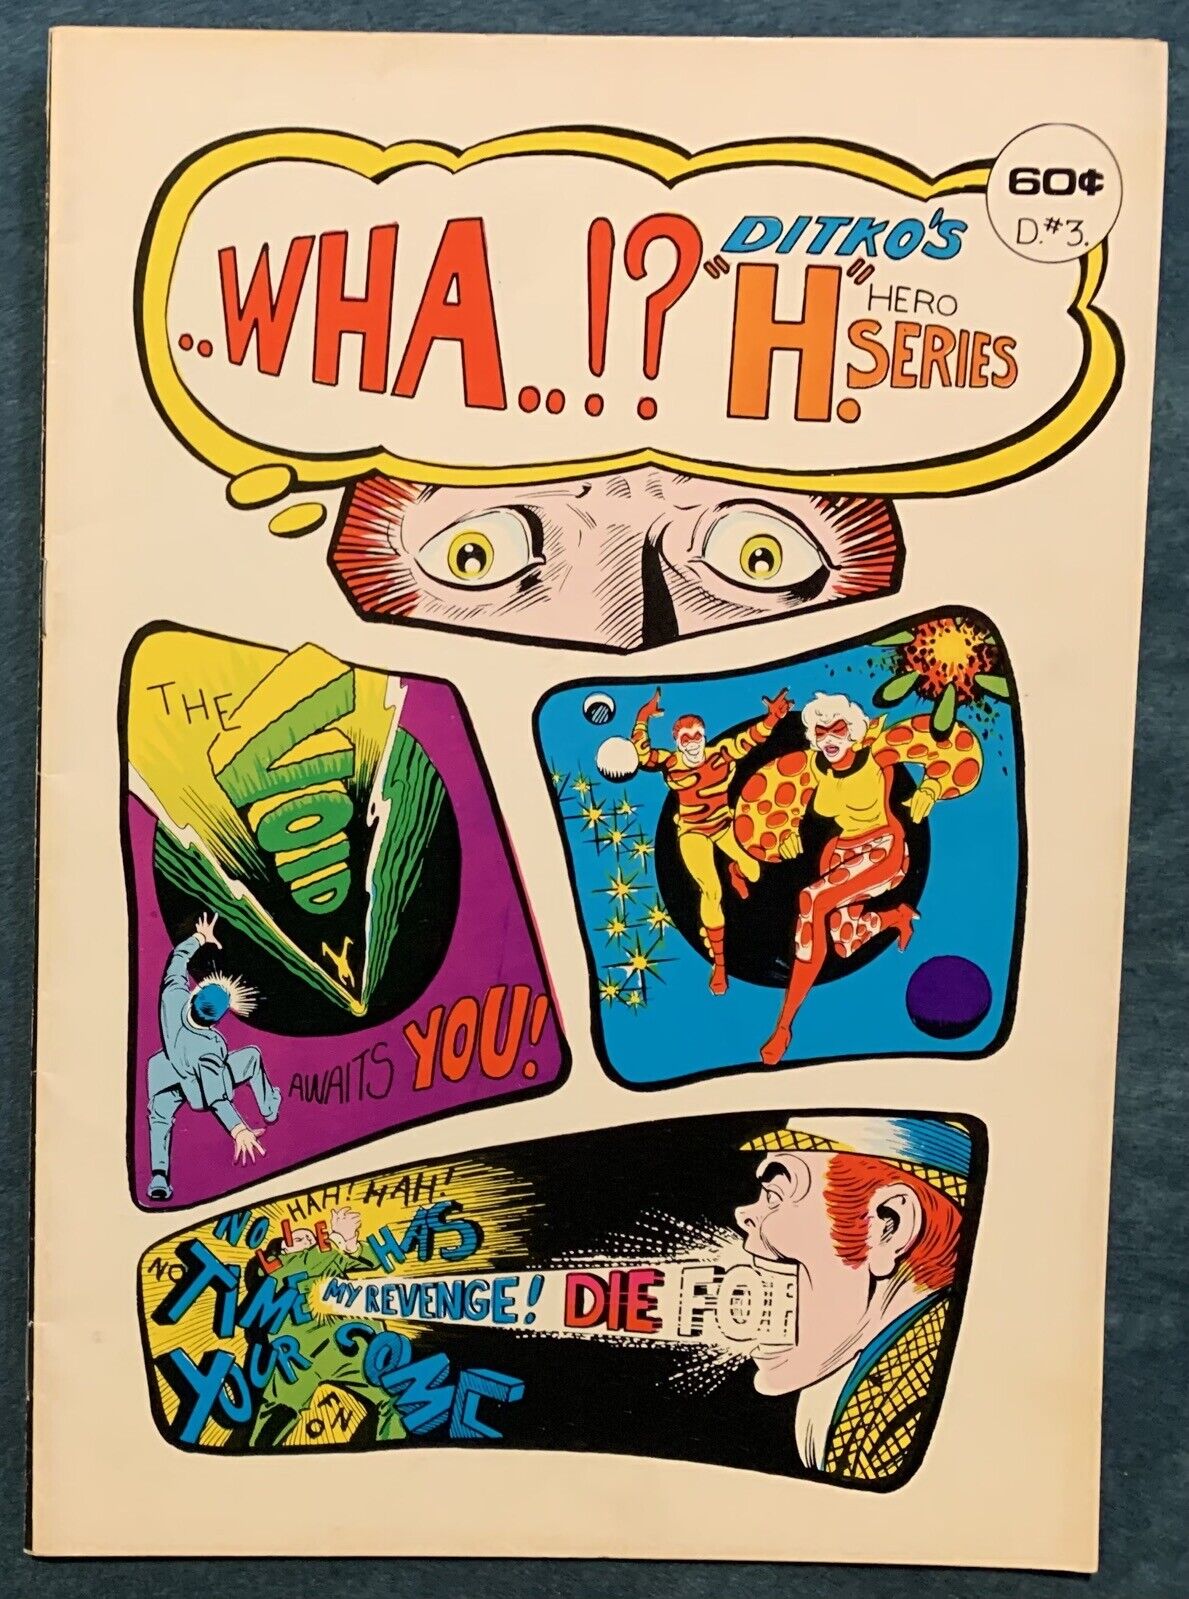 Wha..? June 1975  Underground Comix  Ditko’s “H” Hero Series